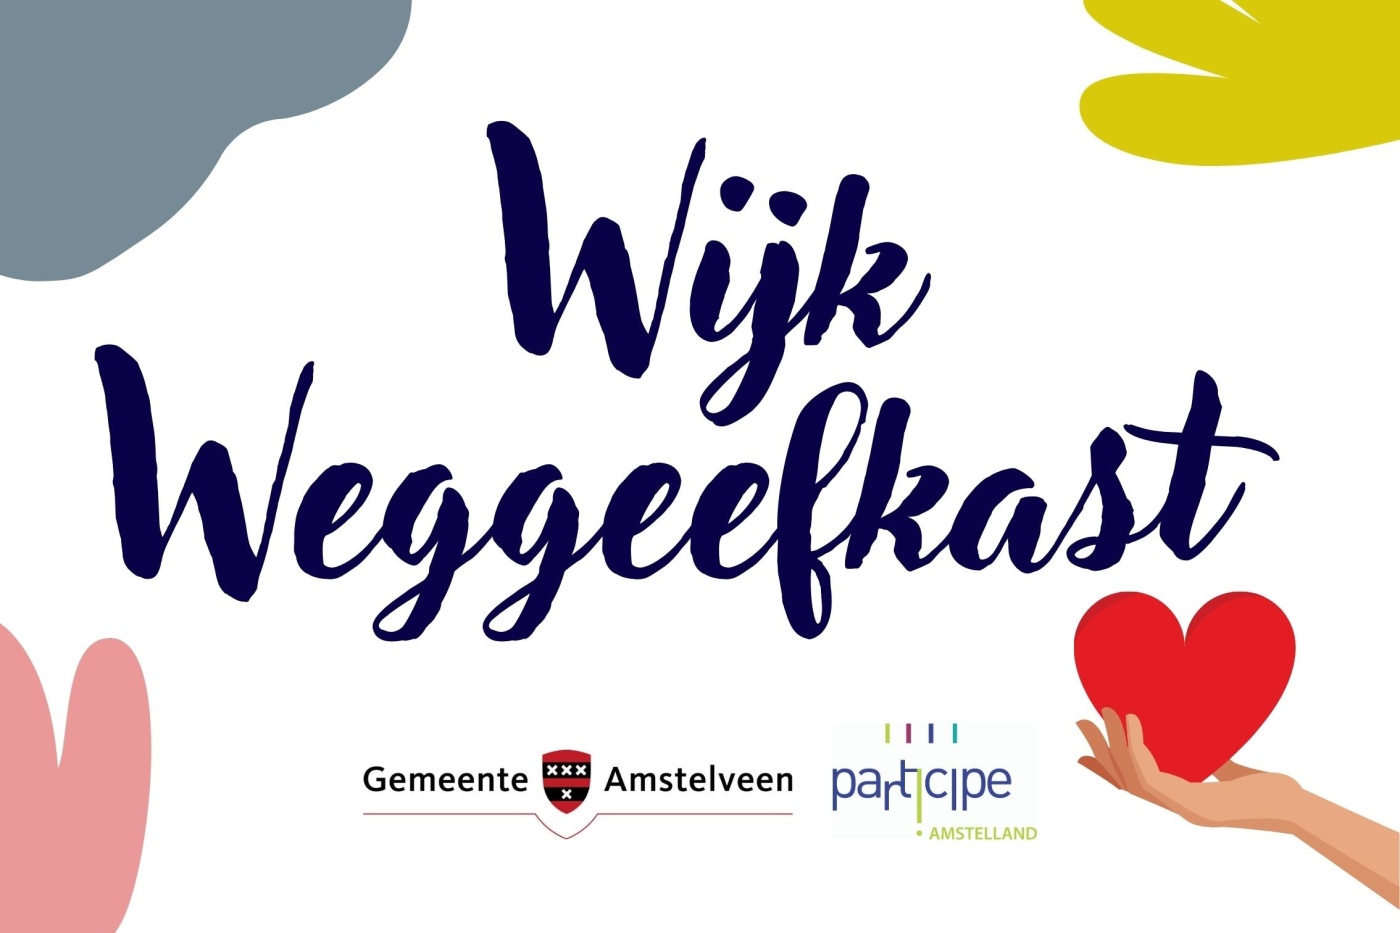 Wijk Weggeeflkast - logo - Afbeelding voor uitingen.jpg